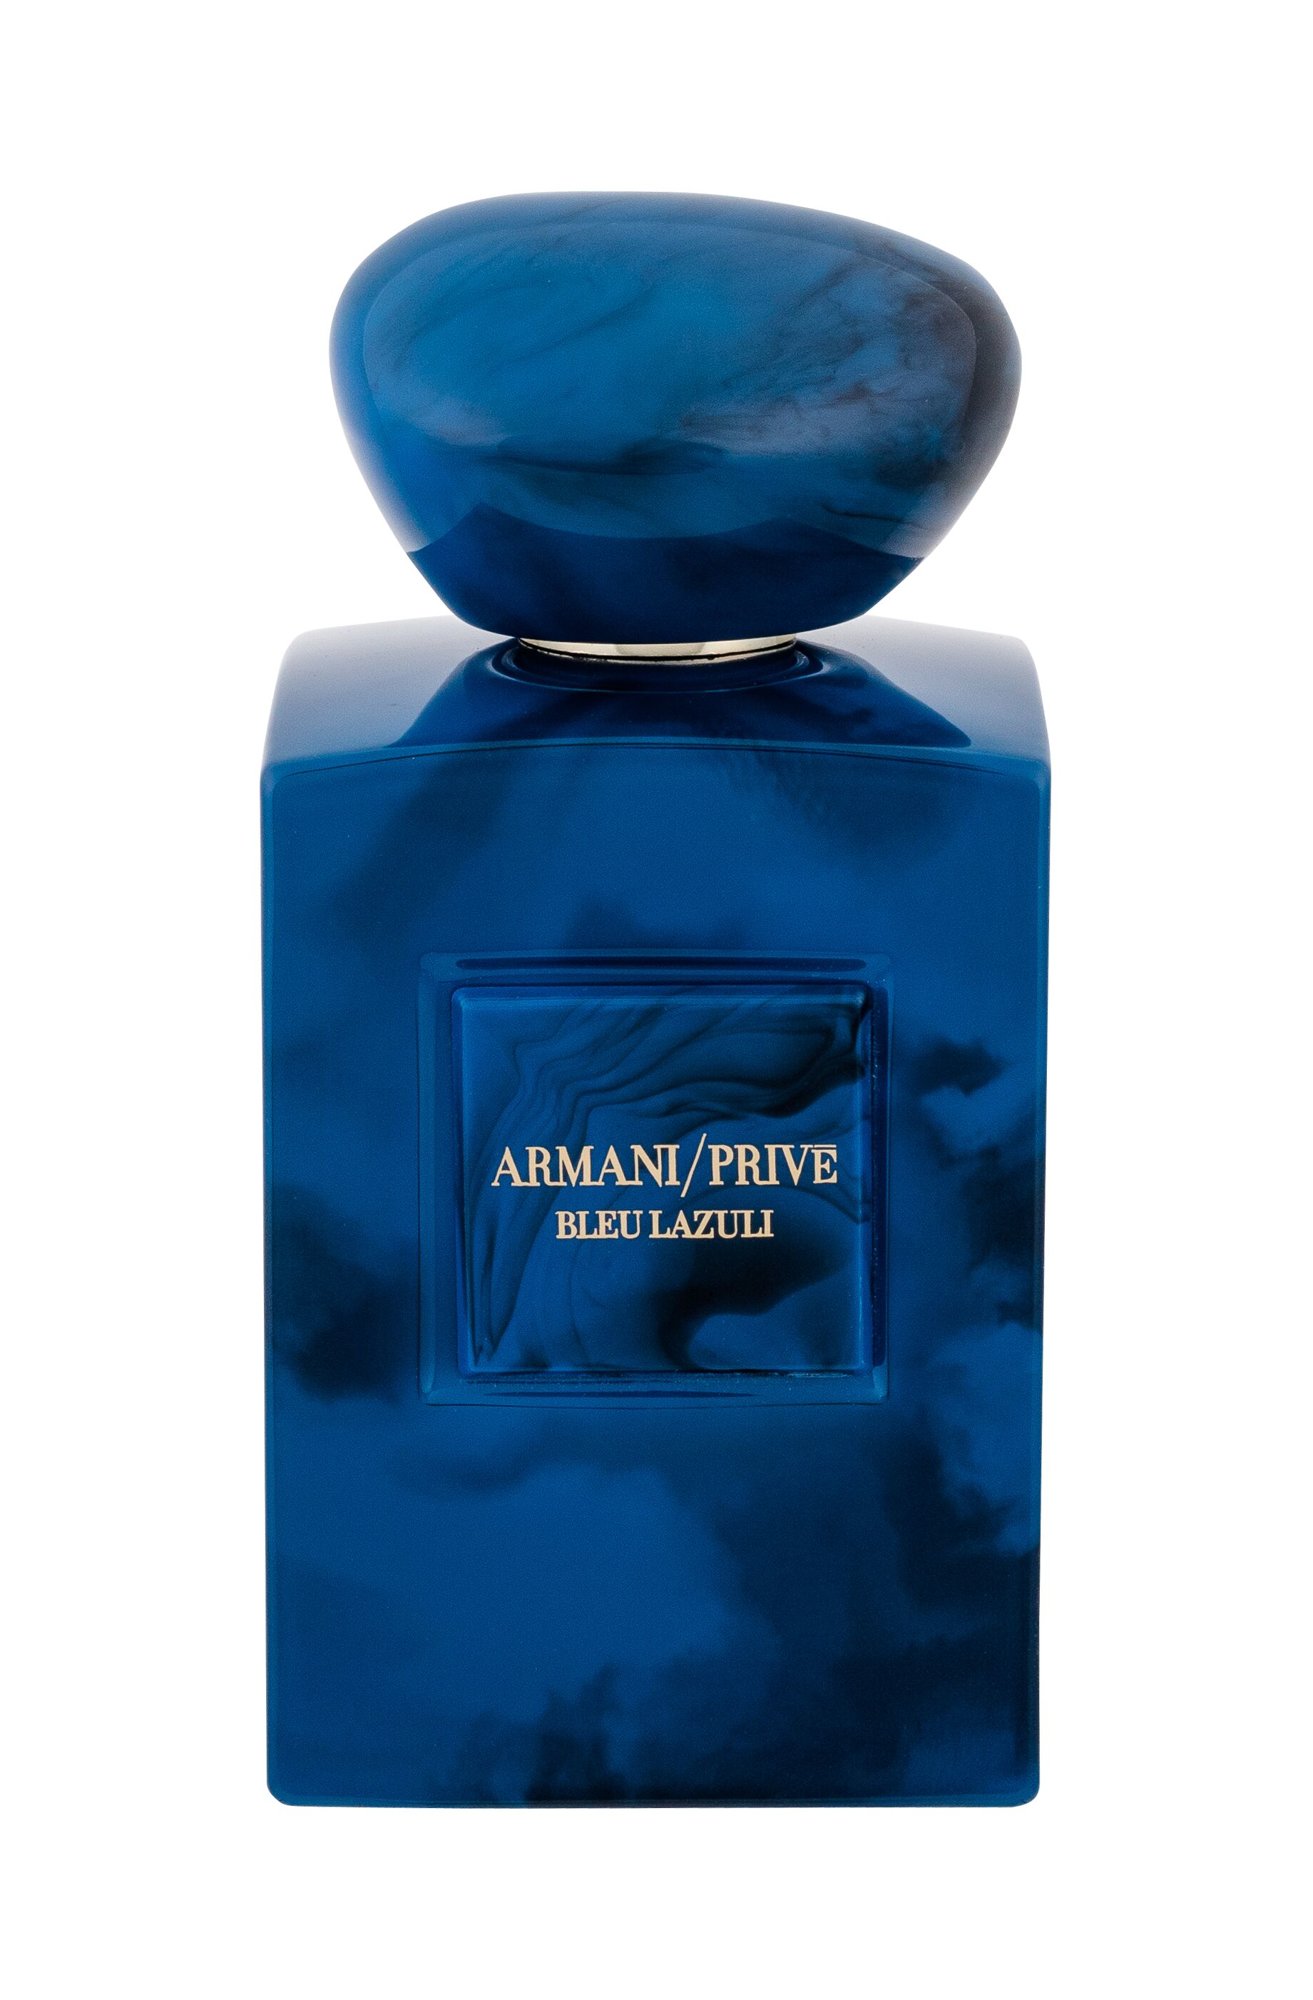 Armani Prive Bleu Lazuli 100ml NIŠINIAI Kvepalai Unisex EDP (Pažeista pakuotė)